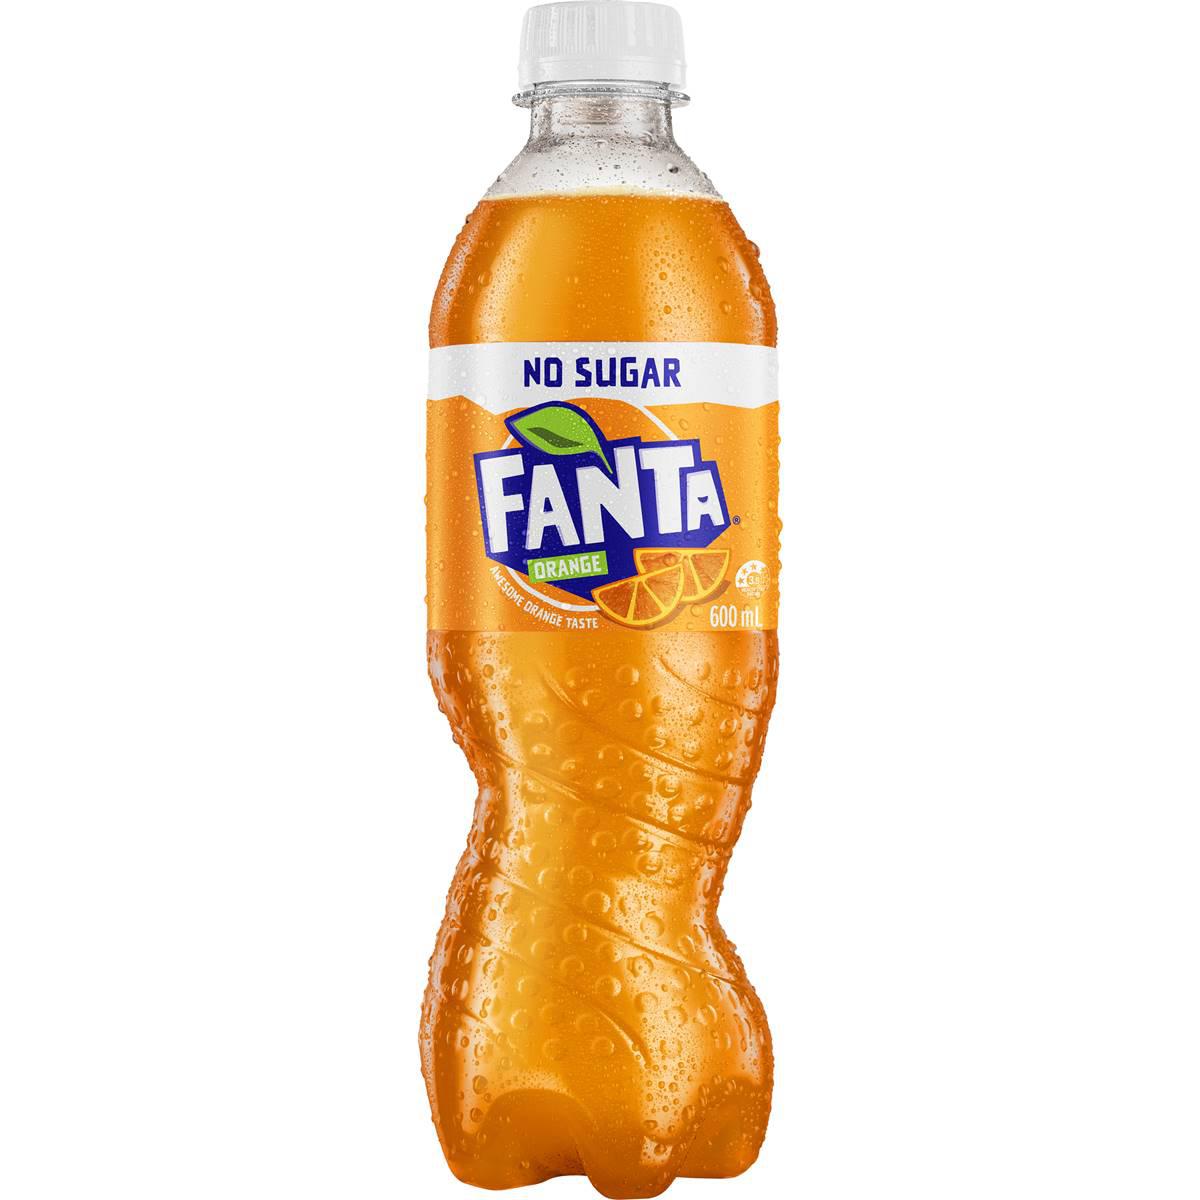 Fanta Orange Zero Sugar Soft Drink Bottles 600ml